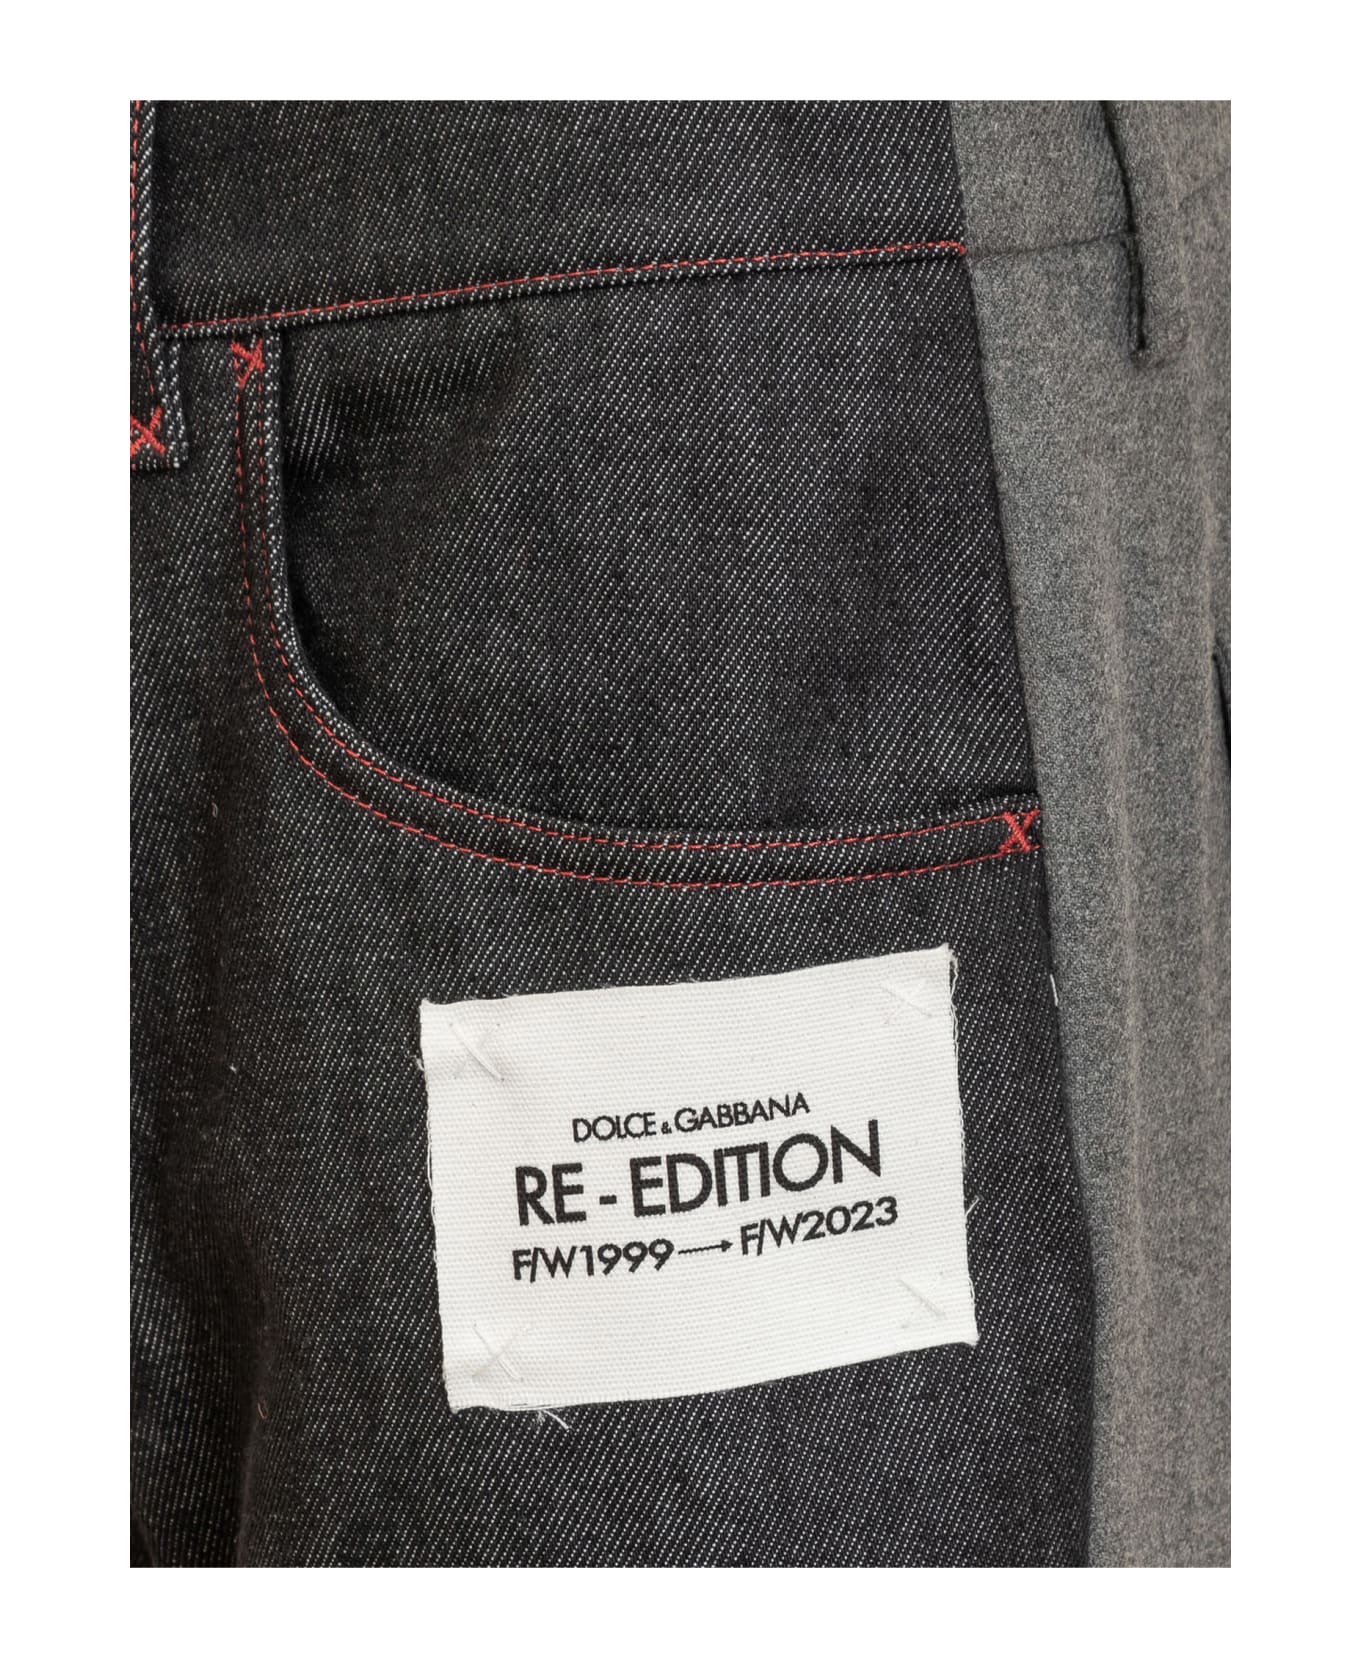 Dolce & Gabbana Re-edition Jeans - GRIGIO CHIARO